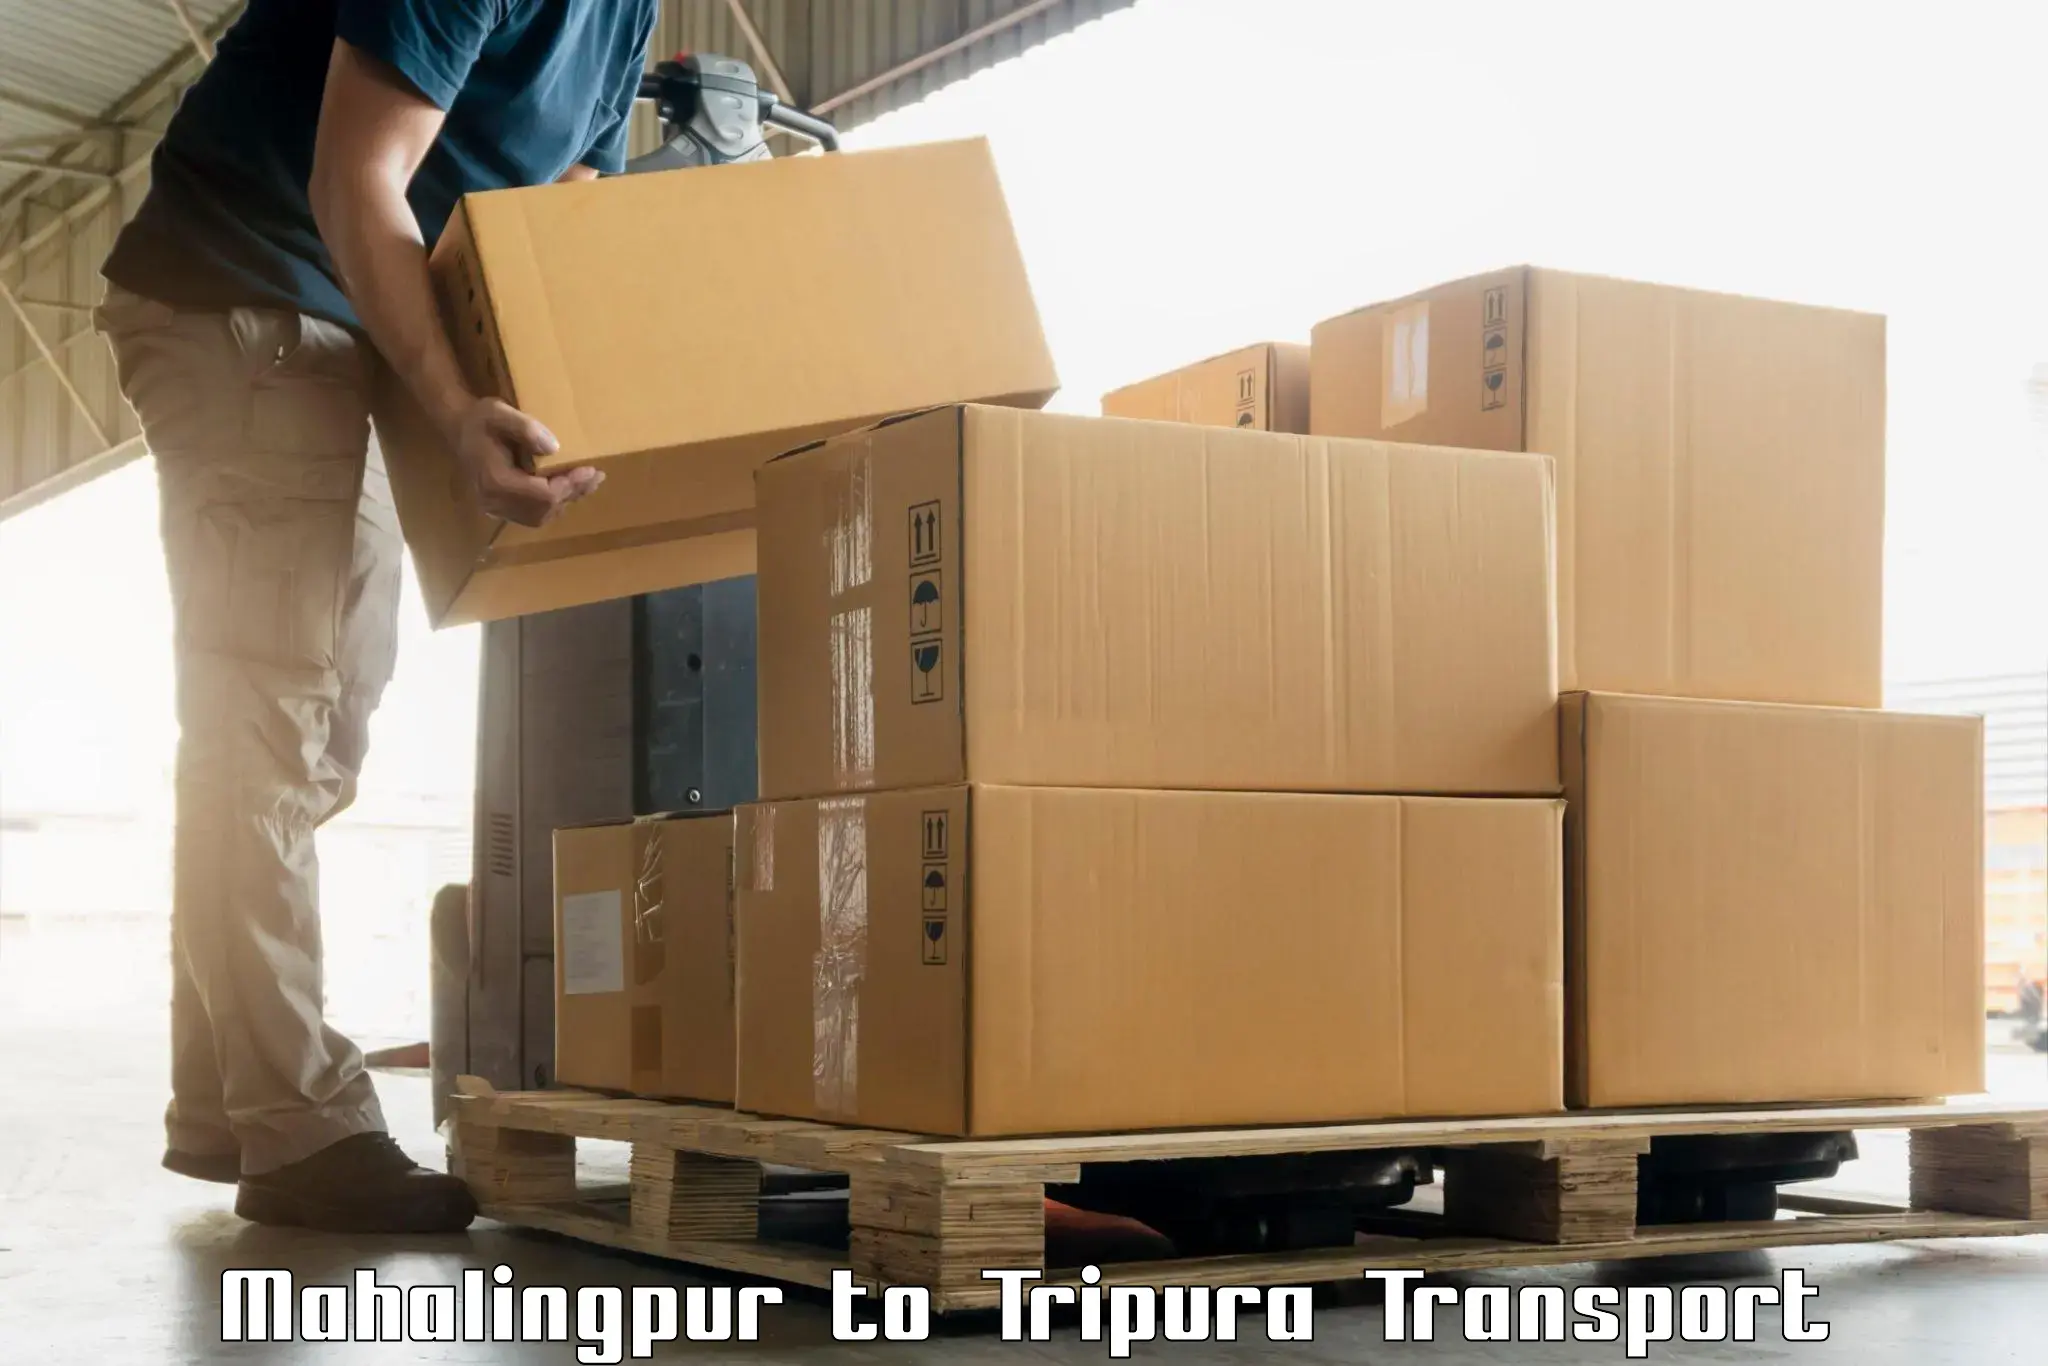 All India transport service Mahalingpur to Aambasa